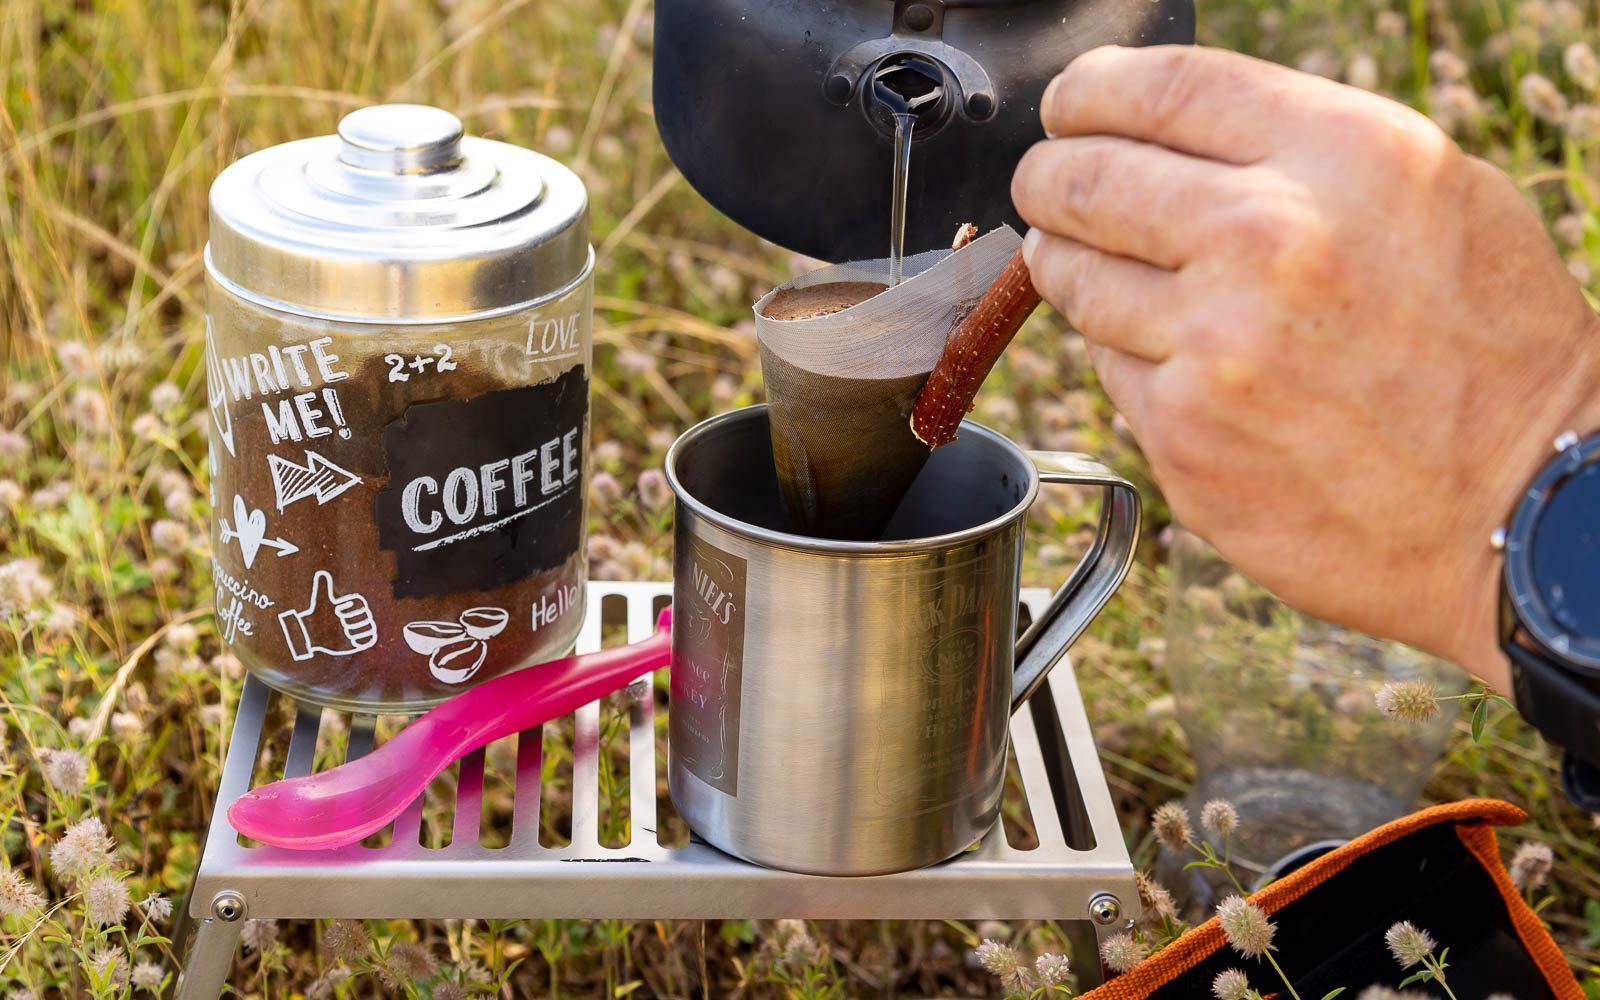 Kaffee wird mit heißem Wasser aus einem schwarzen Wasserkessel in einem Kaffeefilter aufgegossen der in eine Edelstahltasse gehalten wird die, wie auch der Behälter mit dem Kaffeepulver auf dem Klapprost abgestellt ist.